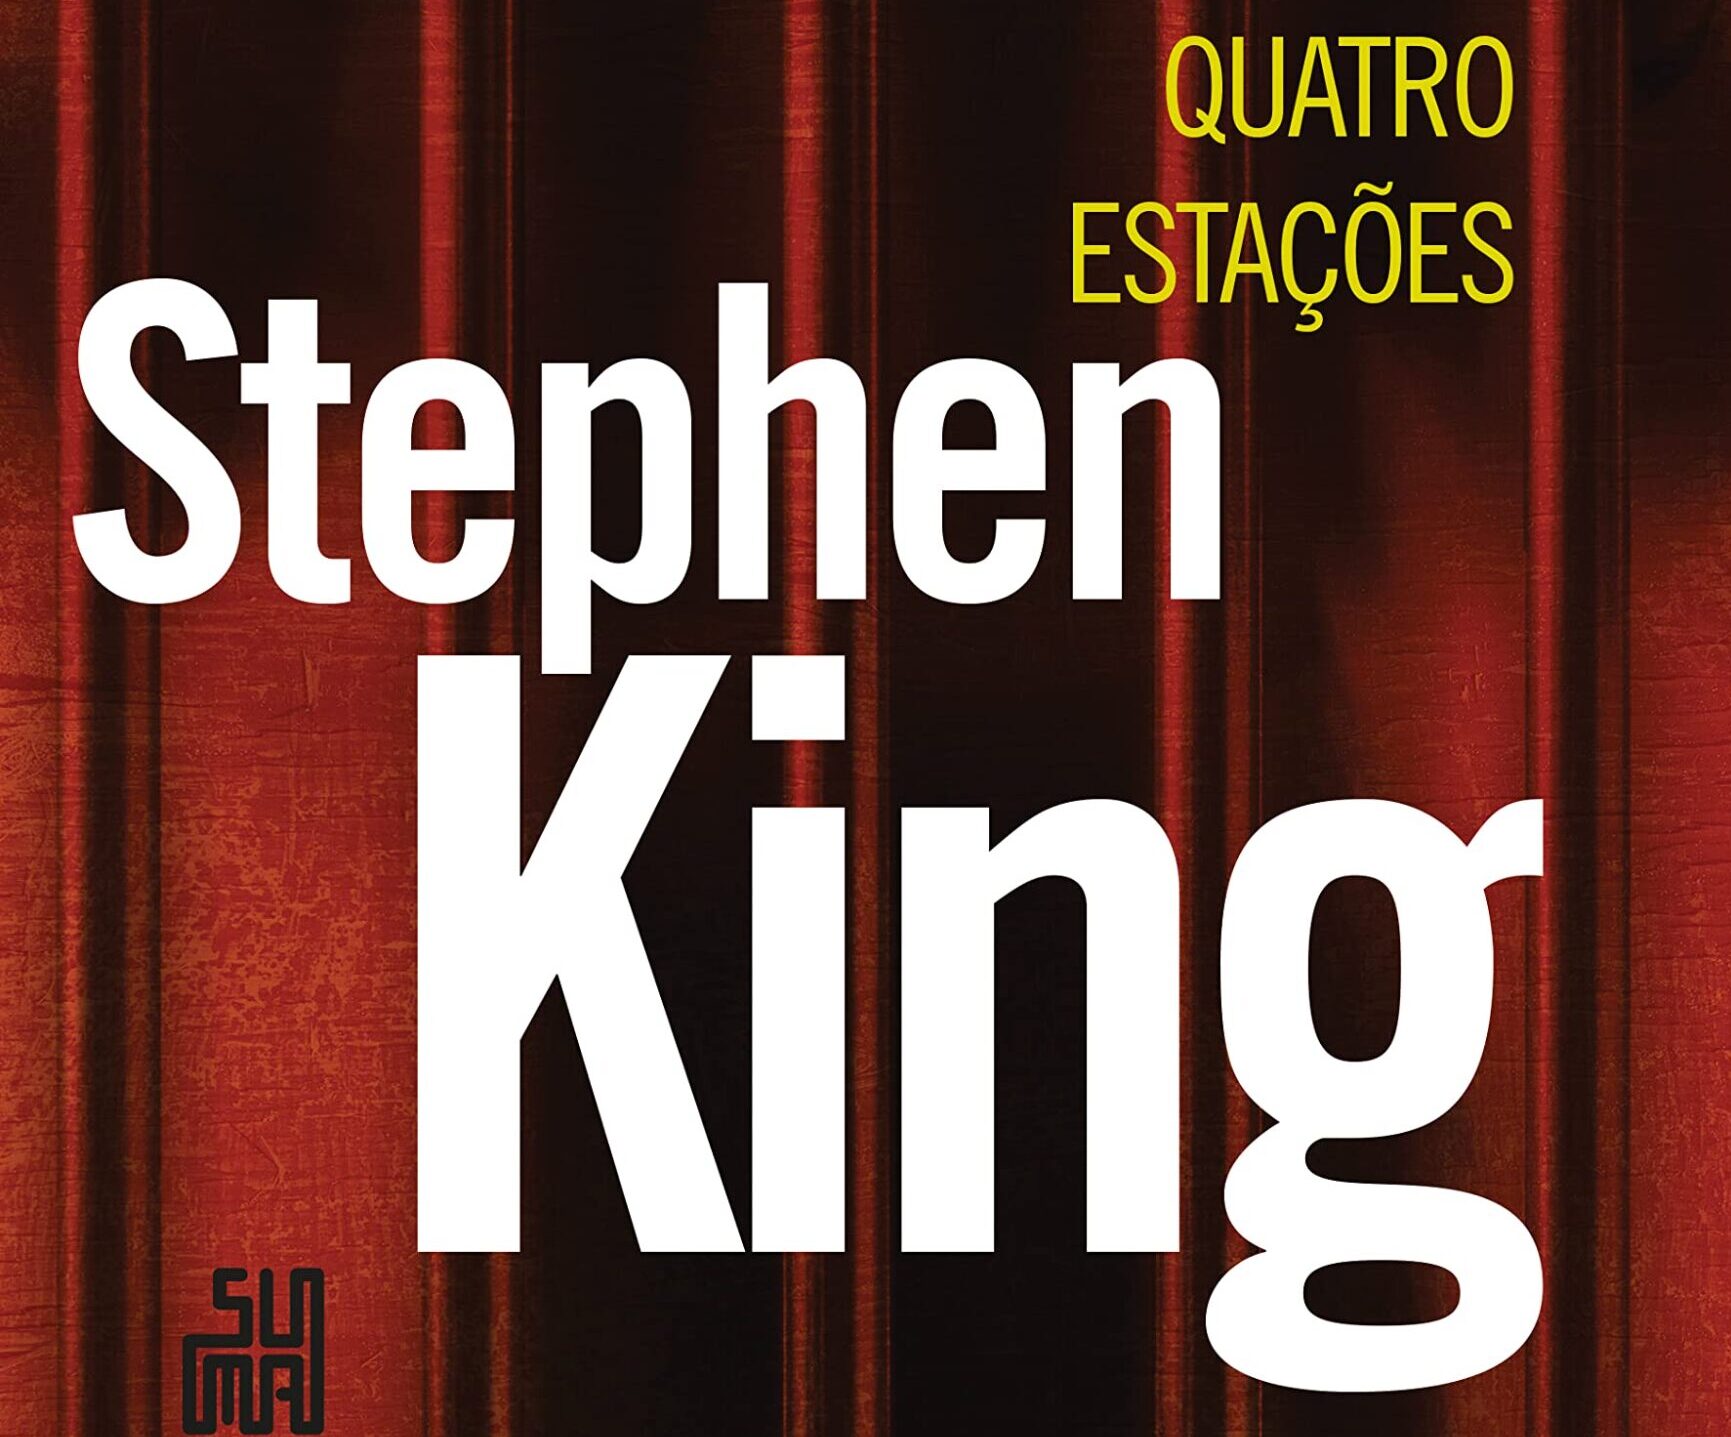 Calaméo - Stephen King - Quatro estações